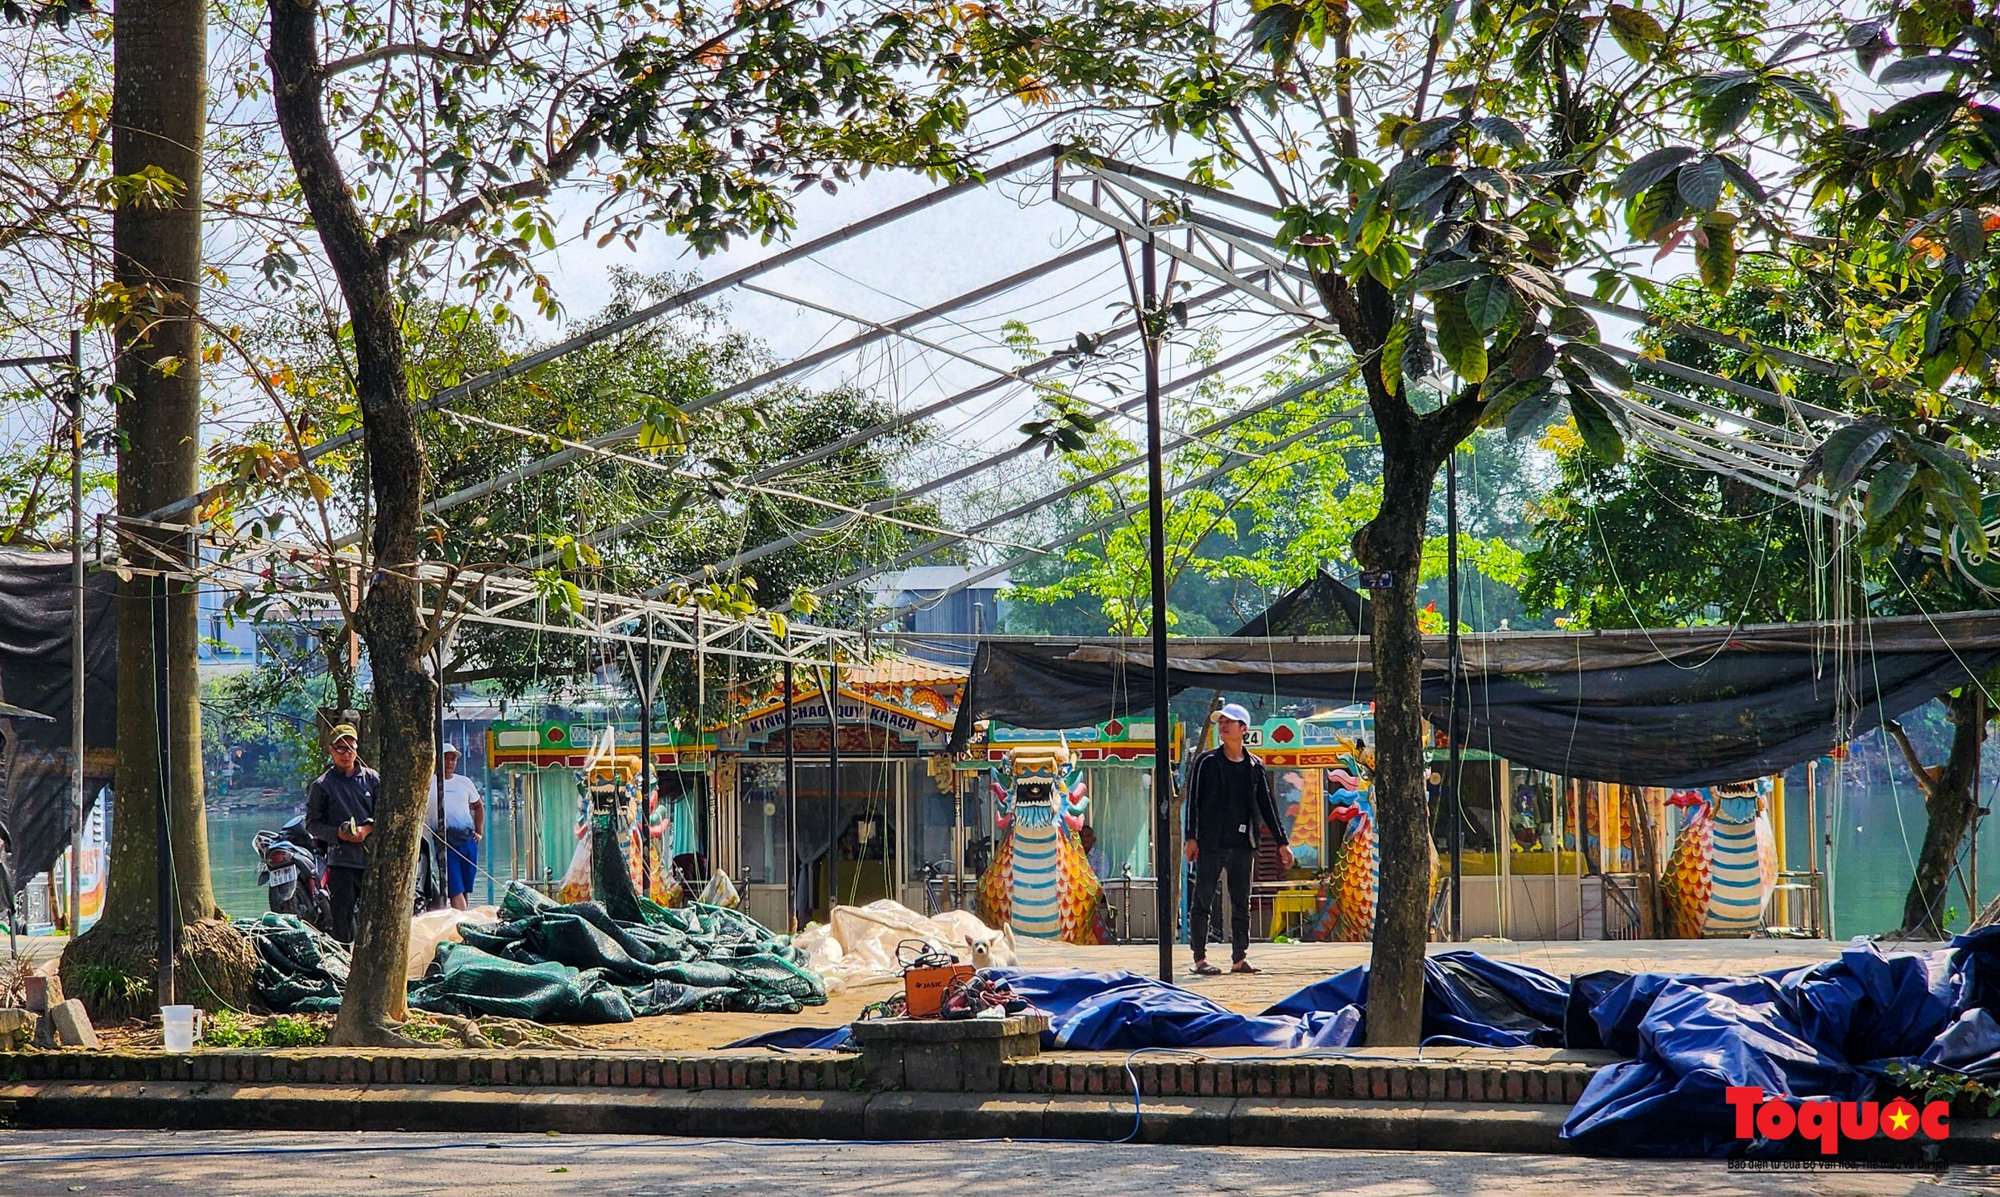 Mạnh tay xử lý hàng quán lấn chiếm trái phép, trả lại không gian cho công viên Trịnh Công Sơn - Ảnh 12.